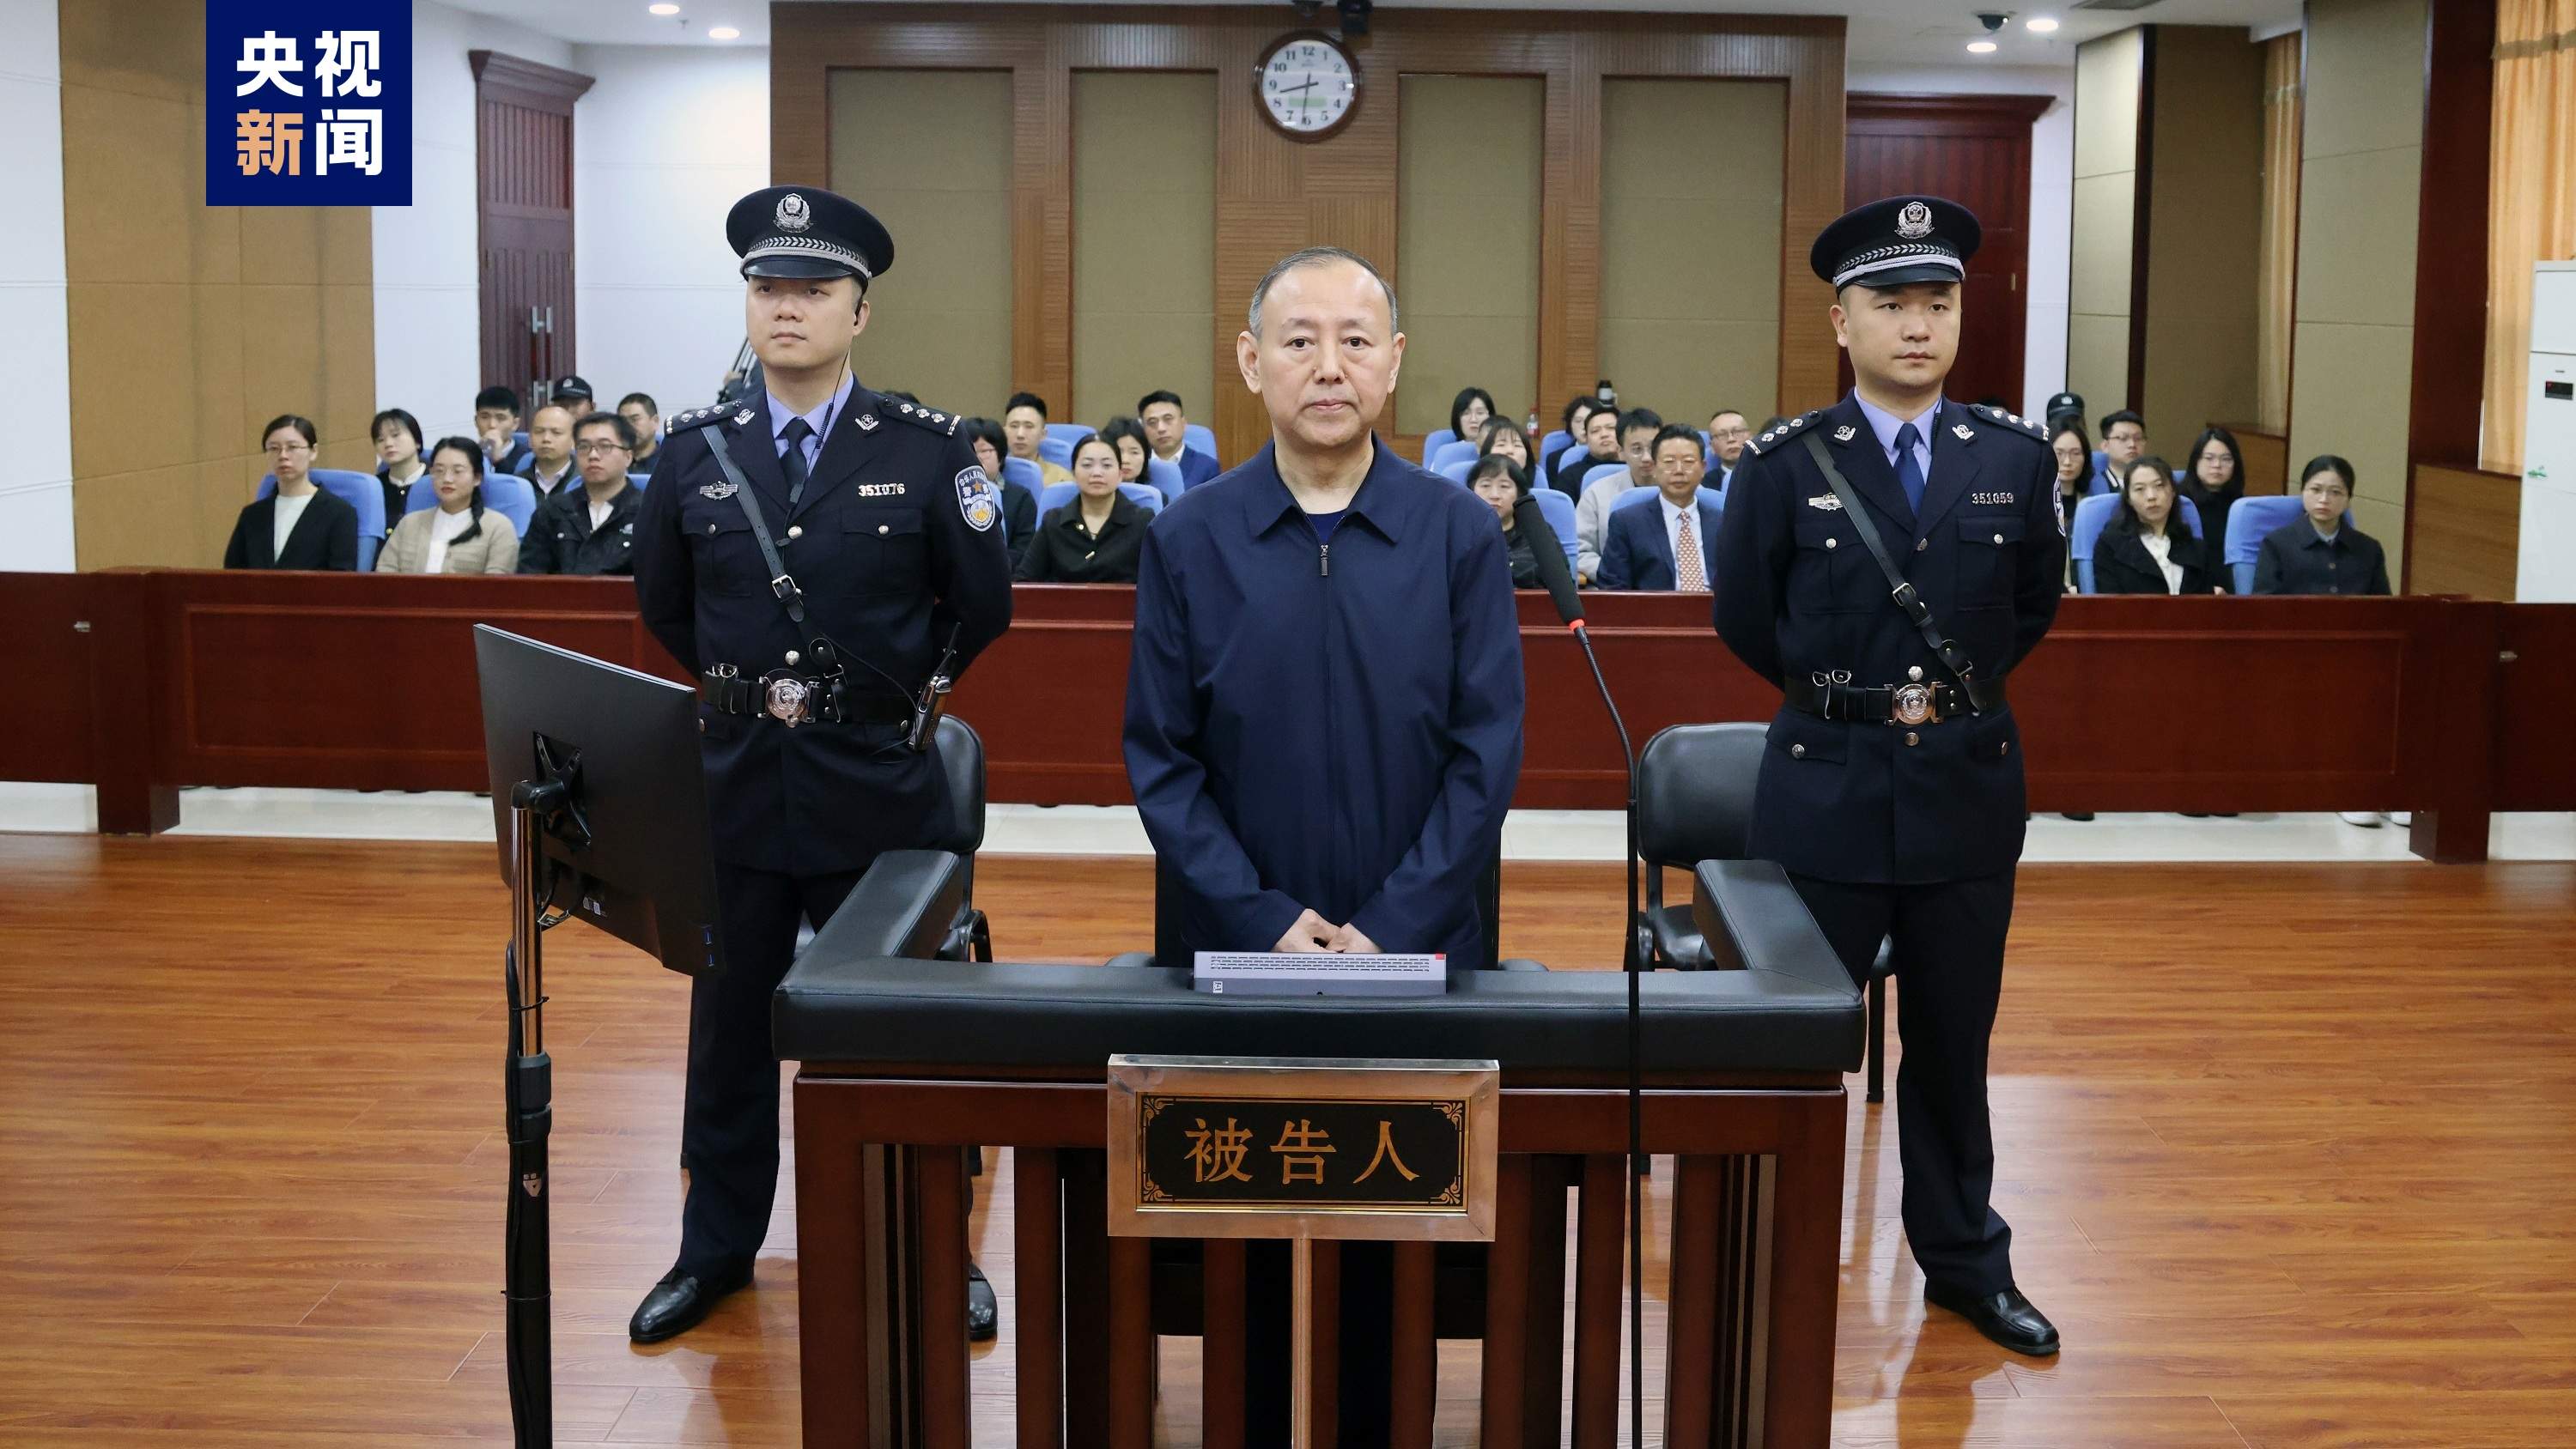 原应急解决部消防声援局副局长张福生受贿案一审开庭